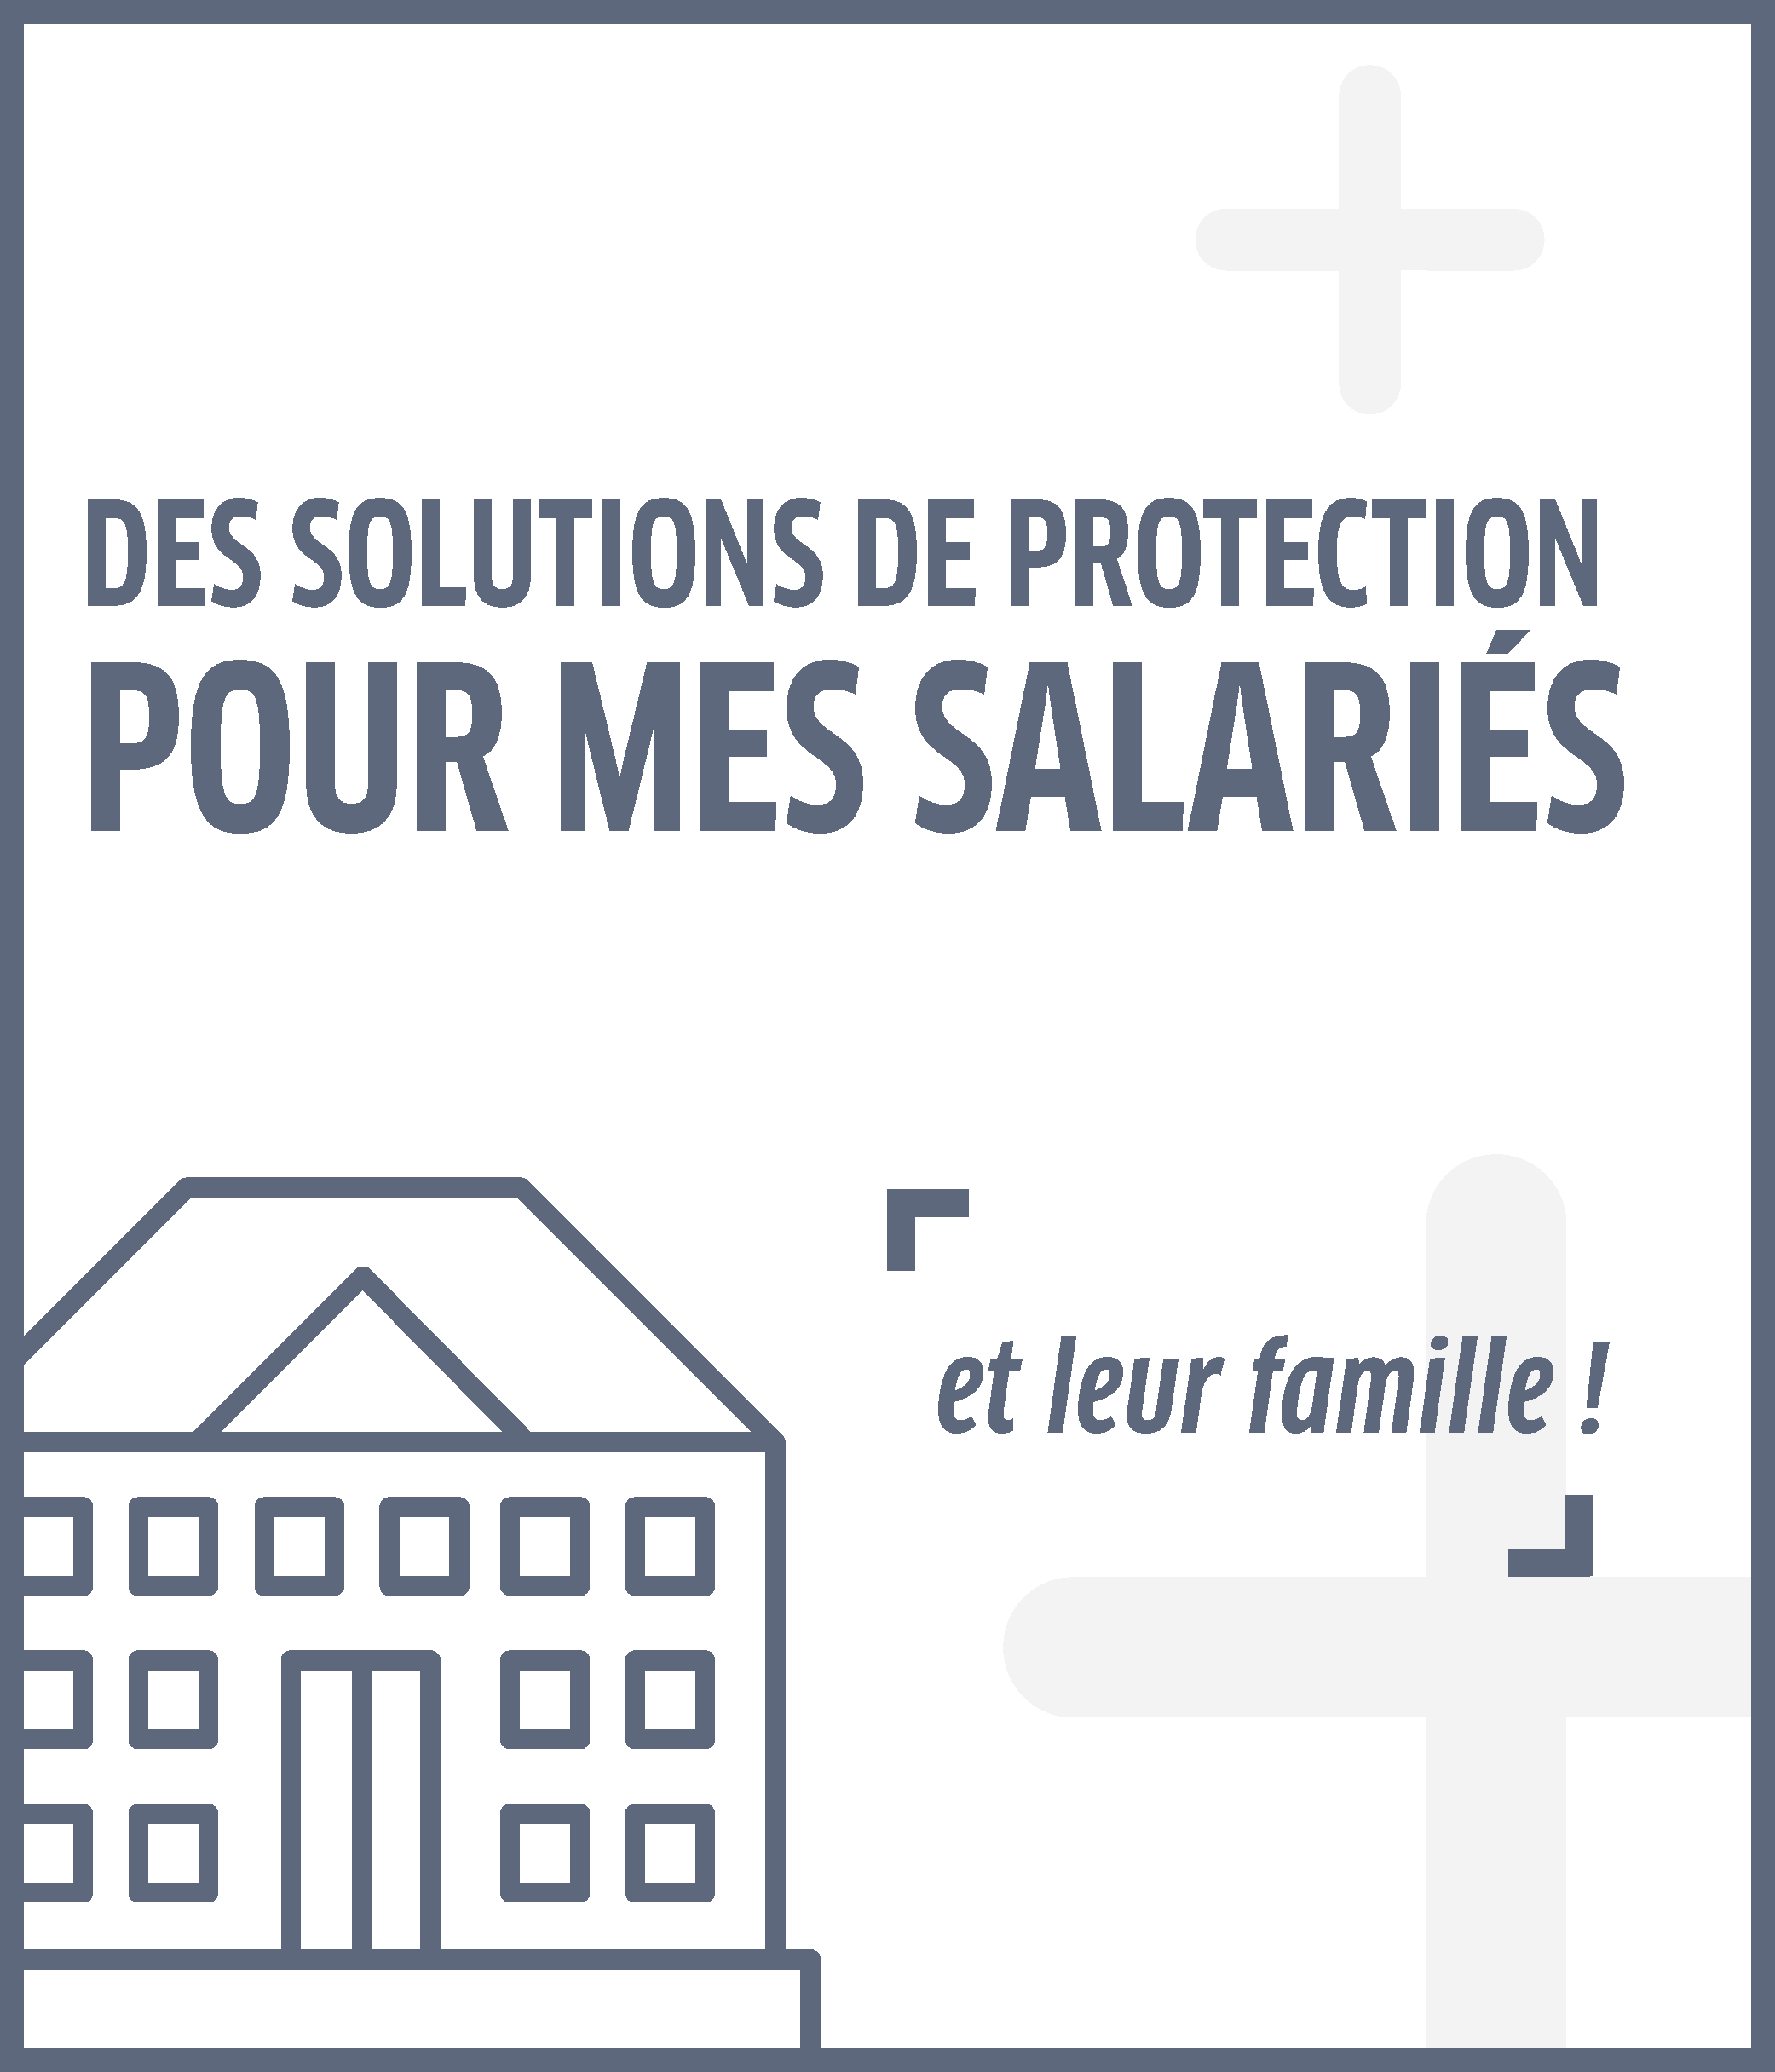 Des solutions de protection pour mes salariés et leur famille.